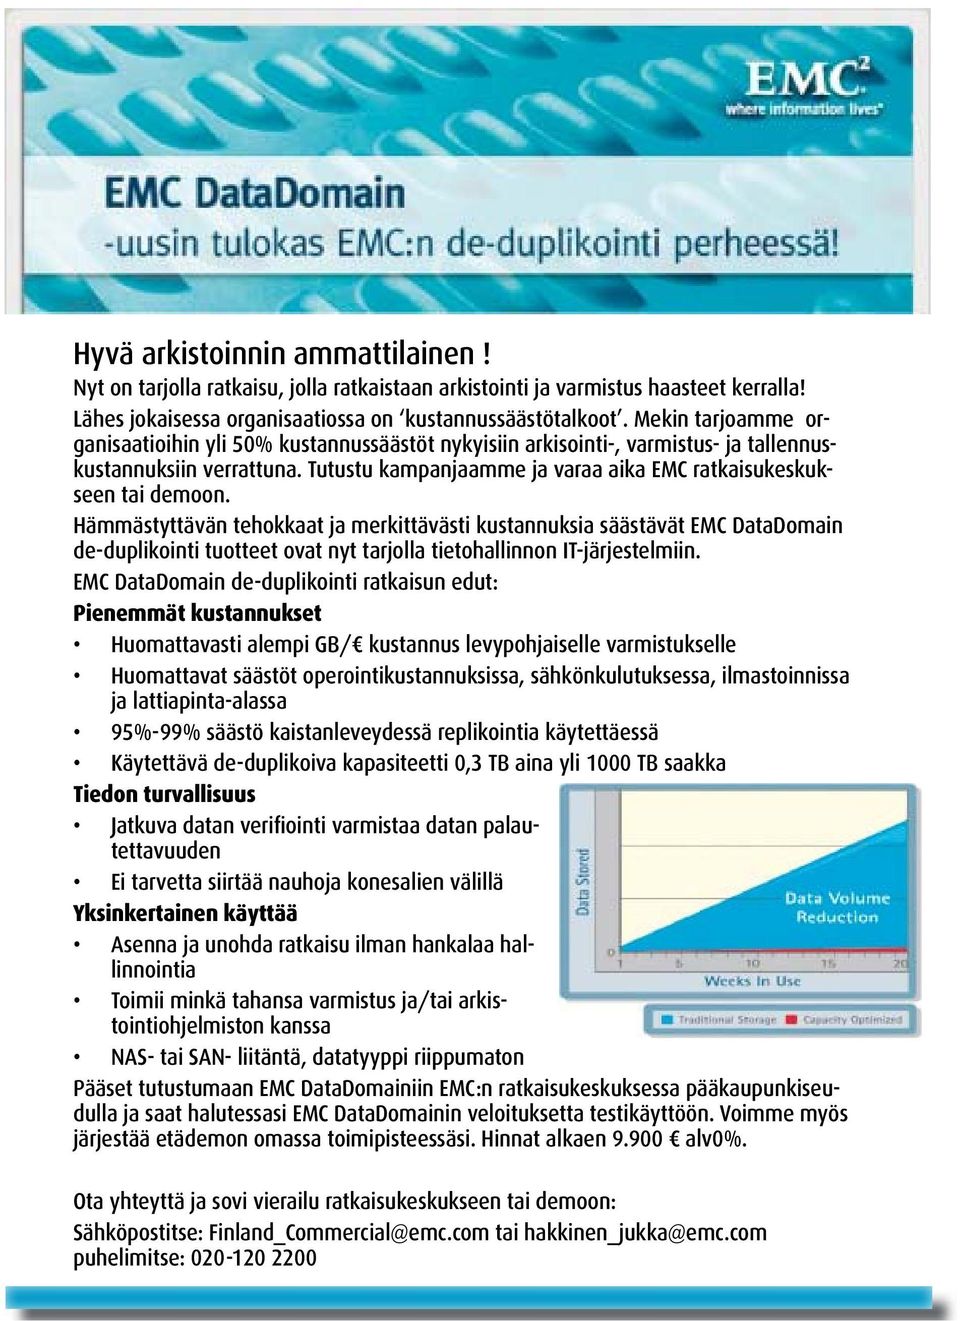 Hämmästyttävän tehokkaat ja merkittävästi kustannuksia säästävät EMC DataDomain de-duplikointi tuotteet ovat nyt tarjolla tietohallinnon IT-järjestelmiin.